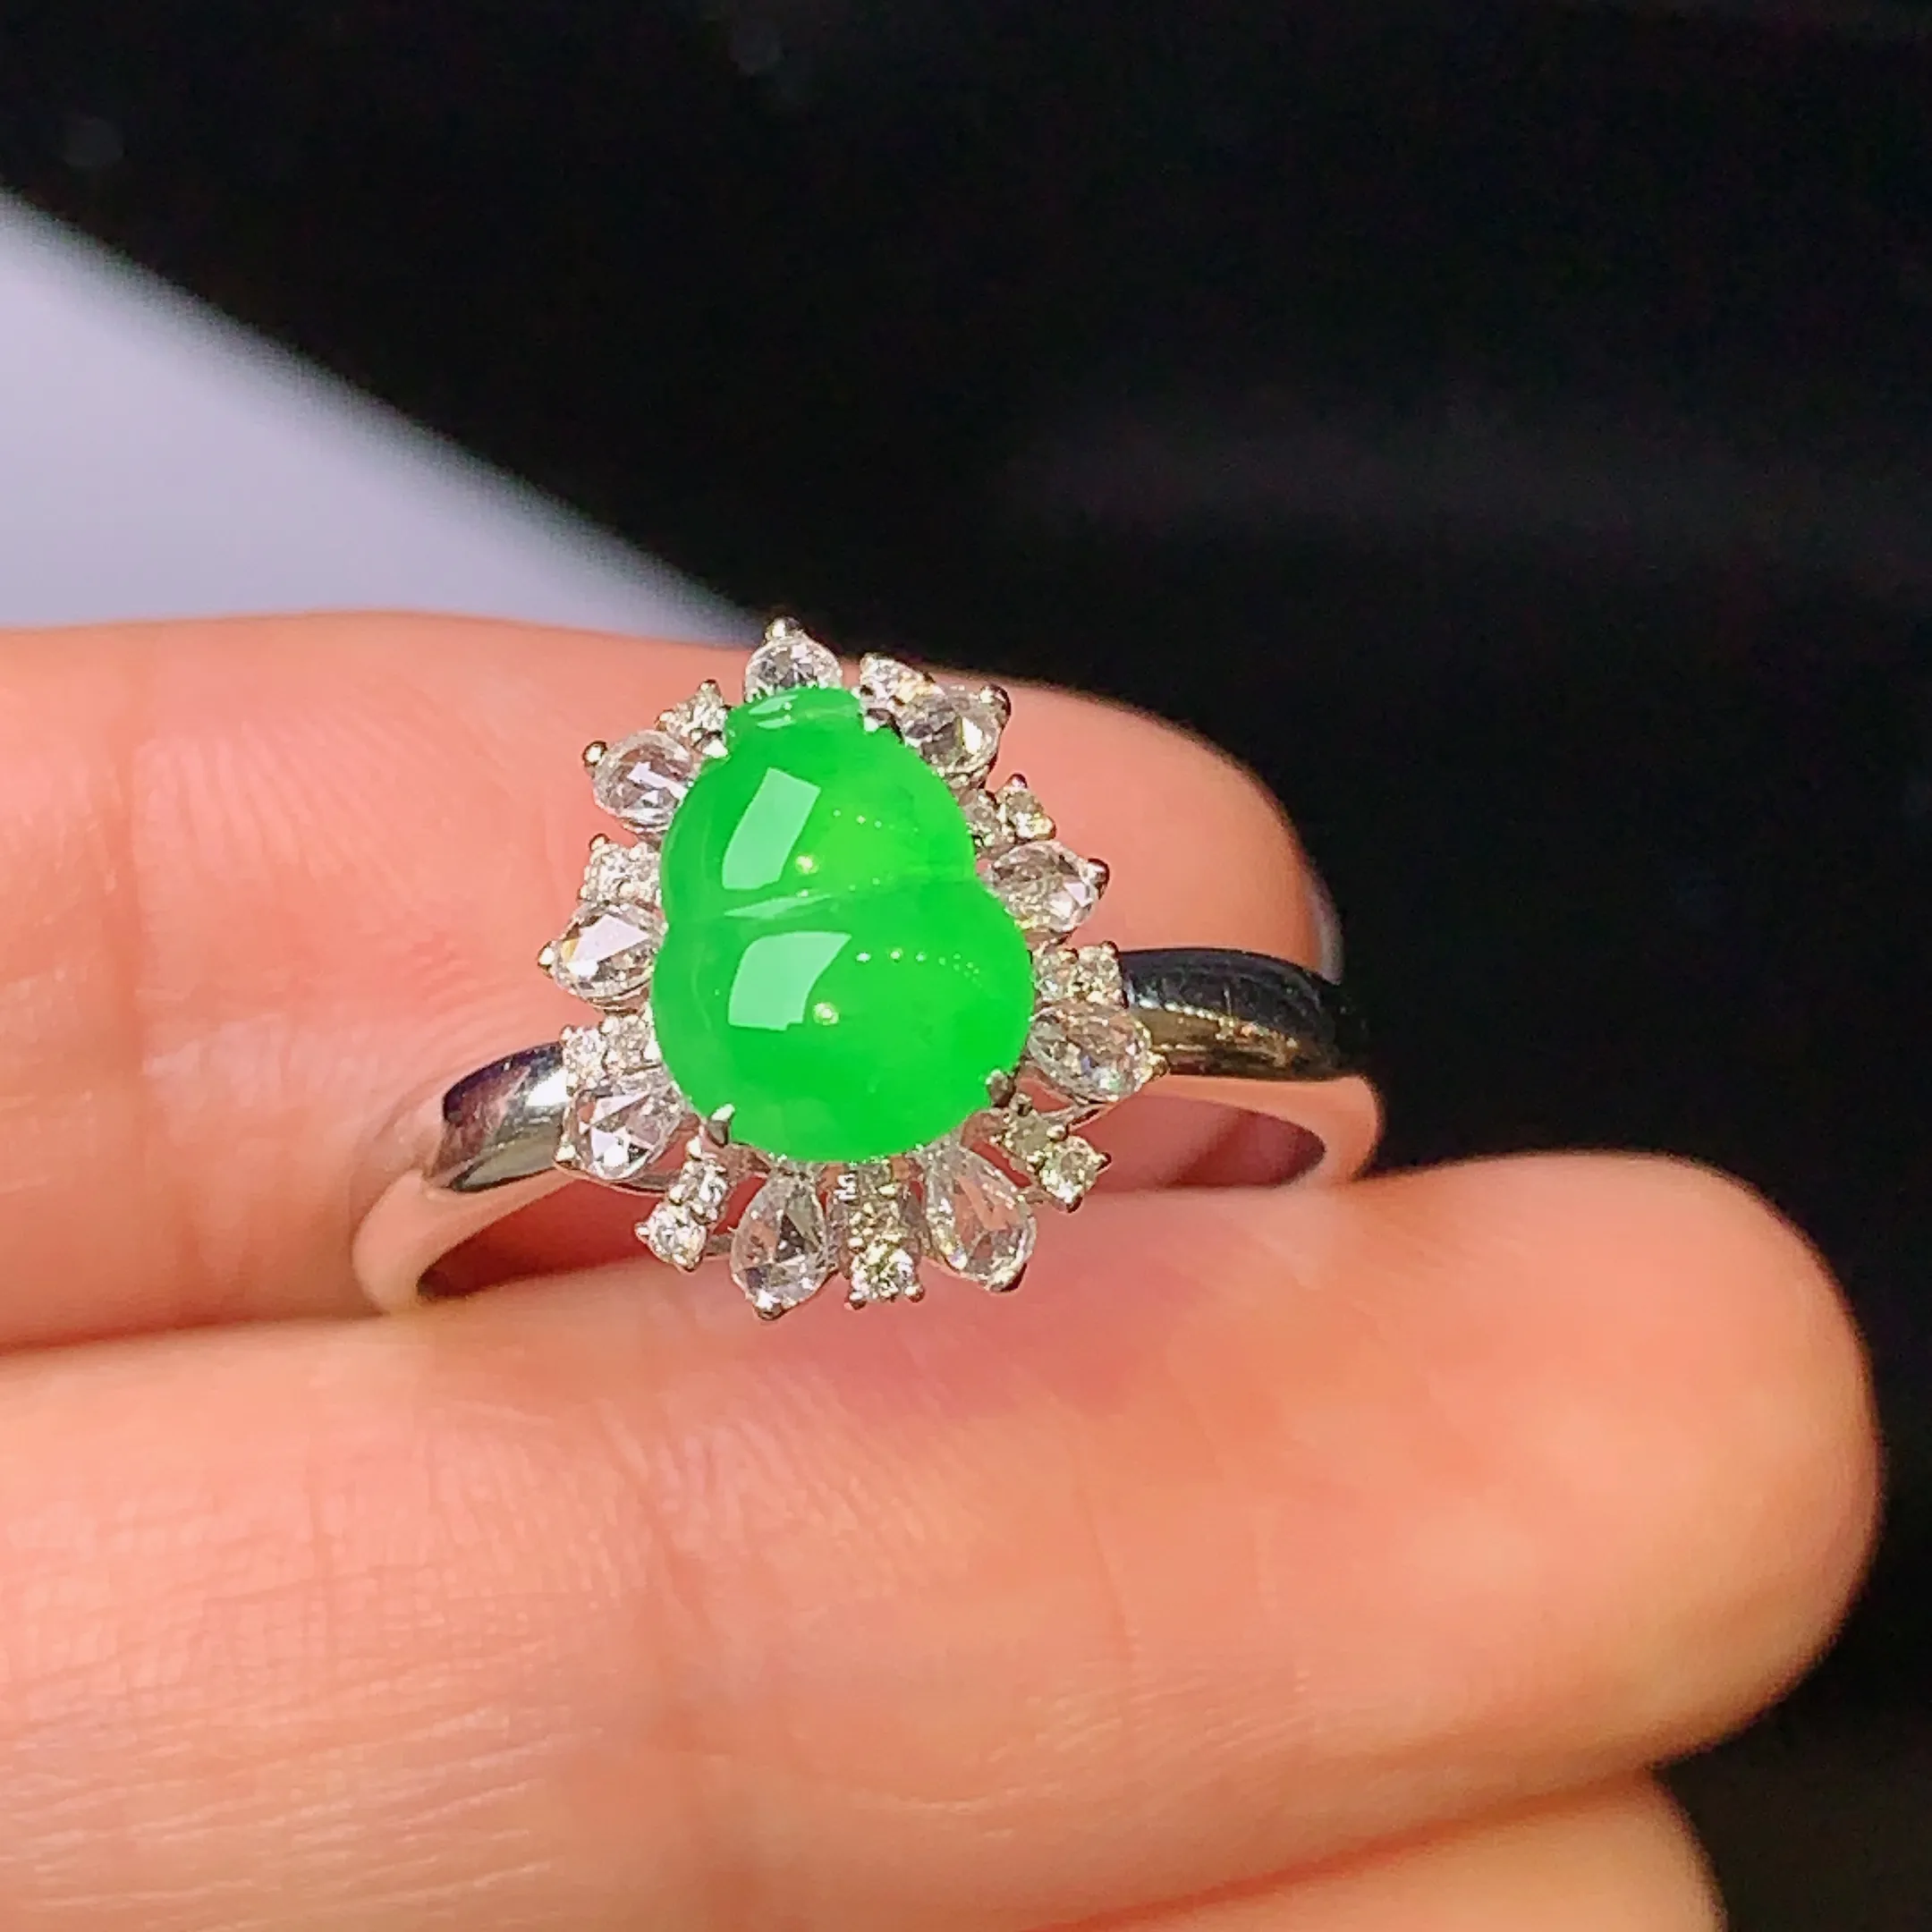 18k金钻镶嵌满绿葫芦戒指 玉质细腻 色泽艳丽 款式新颖时尚唯美 圈口14 整体尺寸12.3*10.